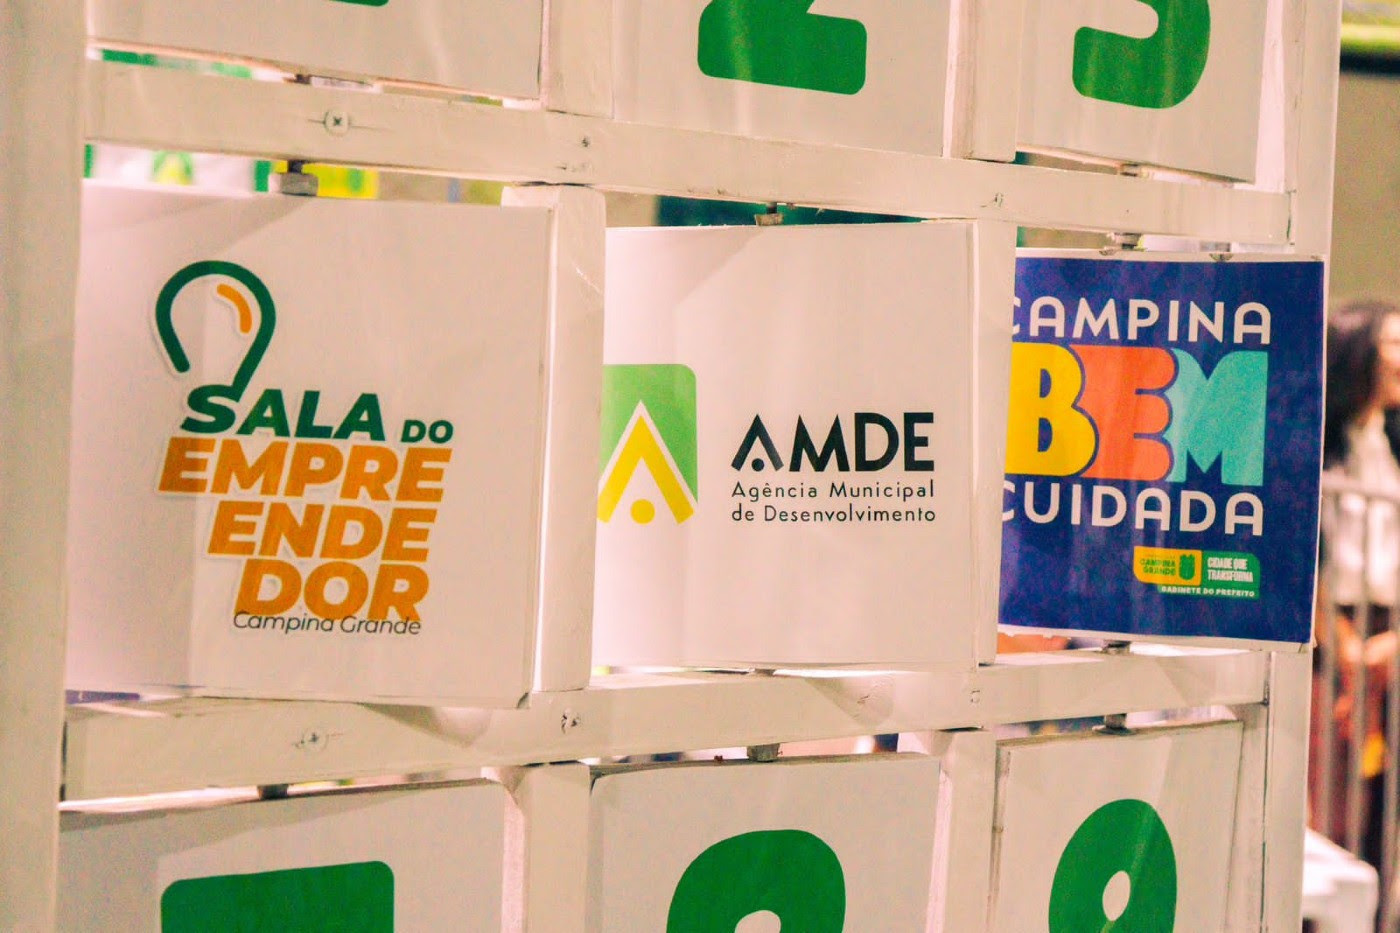 Programa Campina Bem Cuidada: AMDE leva serviços essenciais aos bairros Nova Brasília e Belo Monte